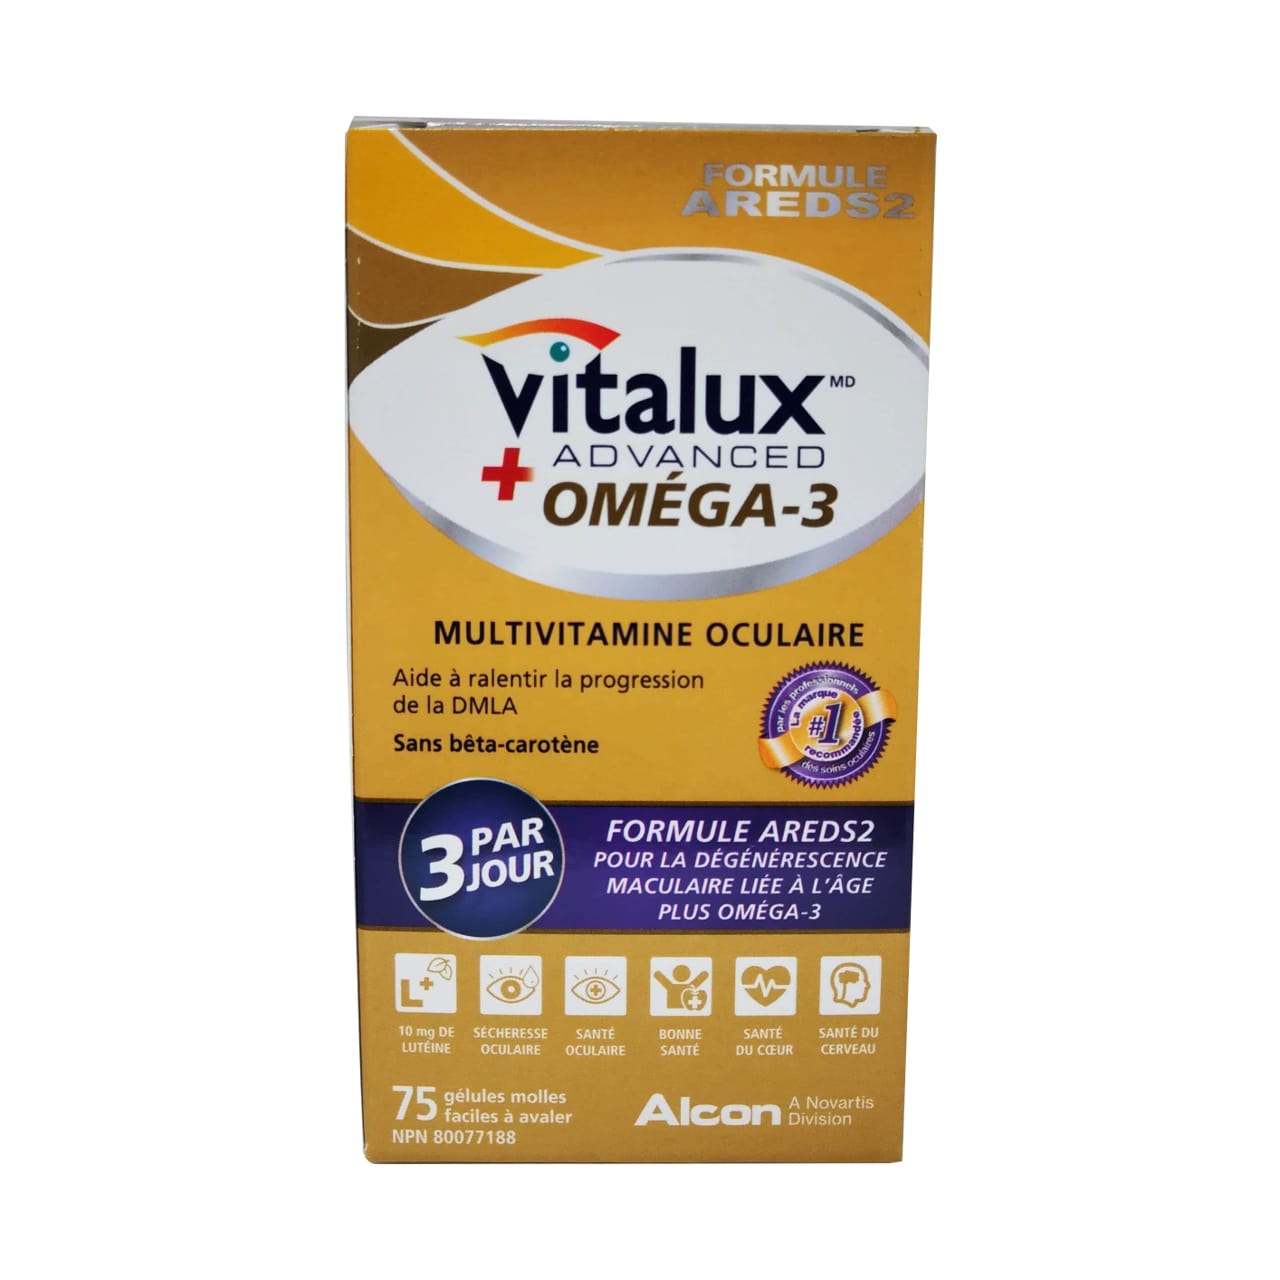 French product label for Alcon Vitalux Advanced Plus Omega-3 Ocular Multivitamin